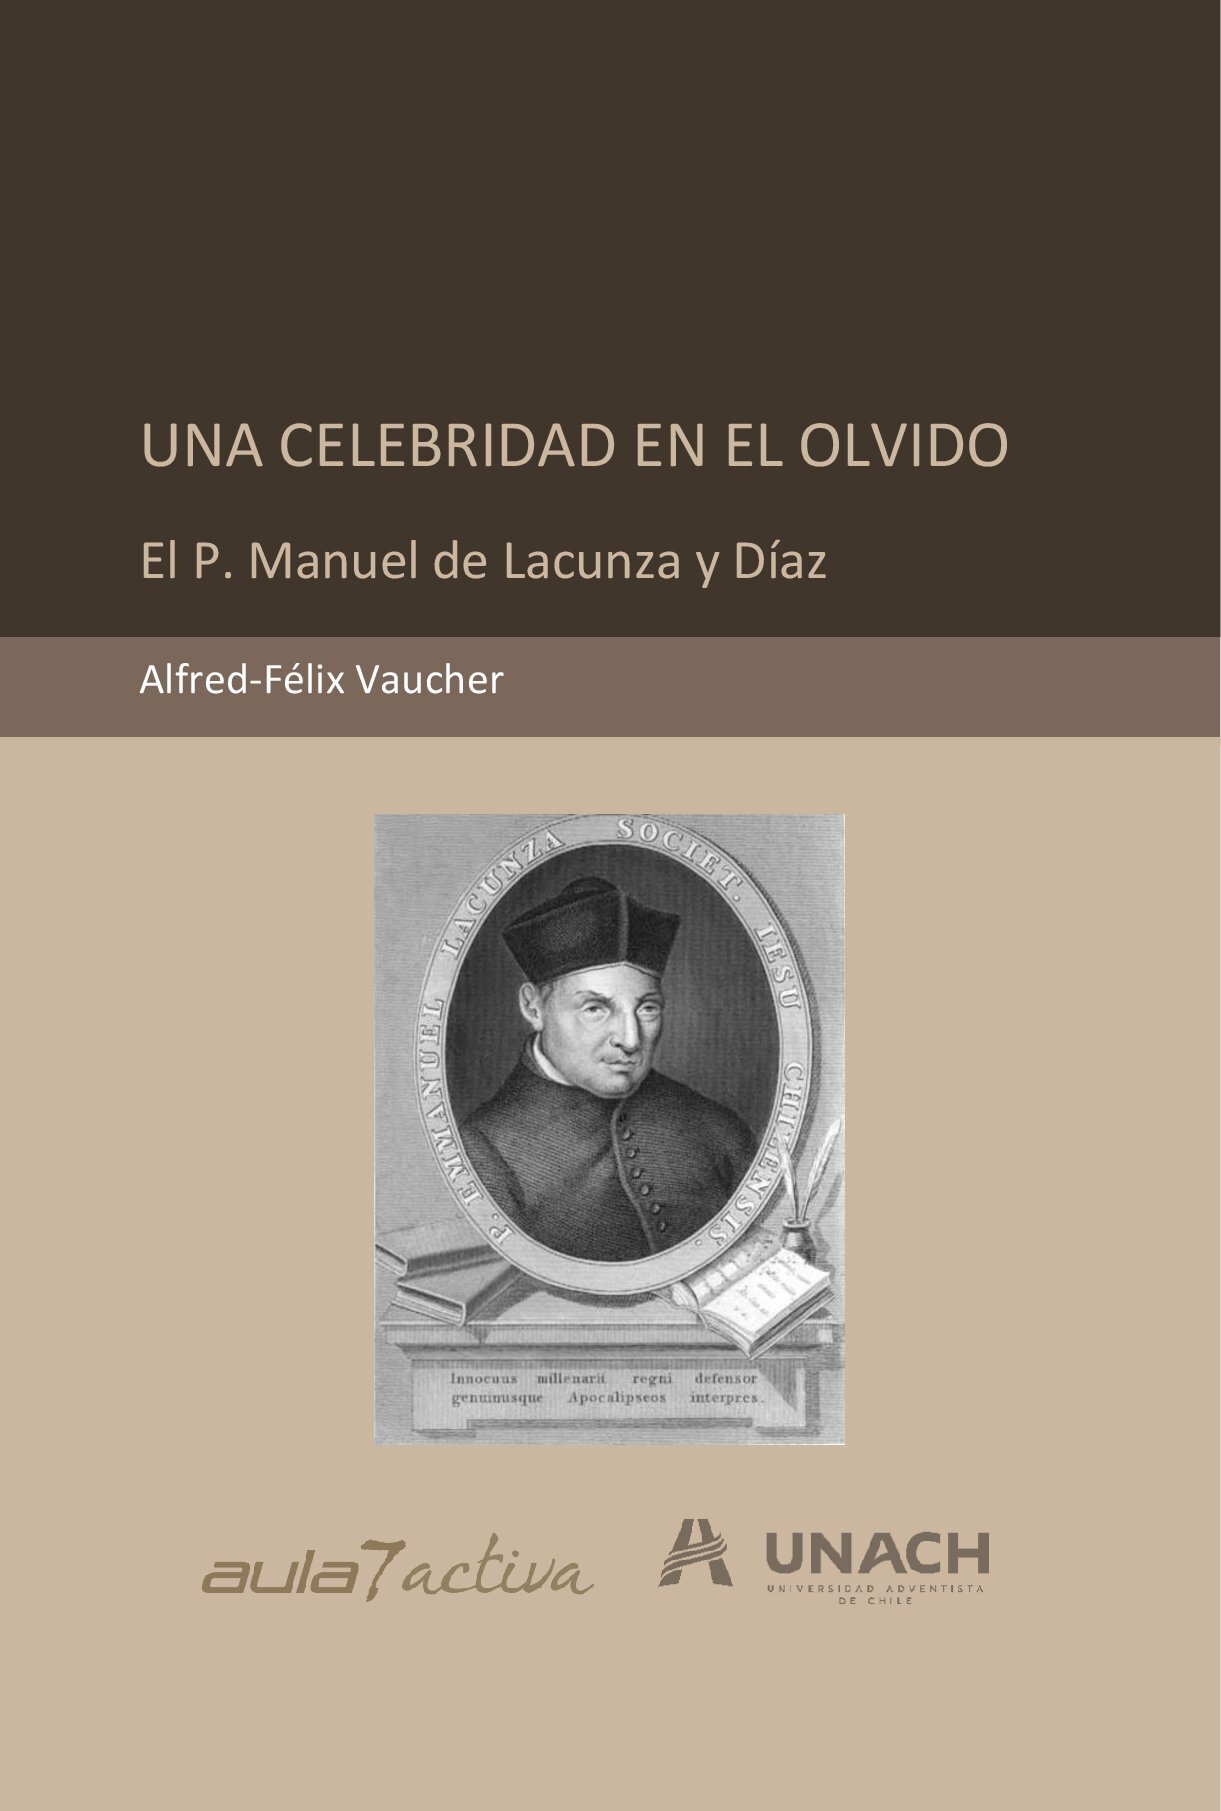 UNA CELEBRIDAD EN EL OLVIDO: El P. Manuel de Lacunza y Díaz